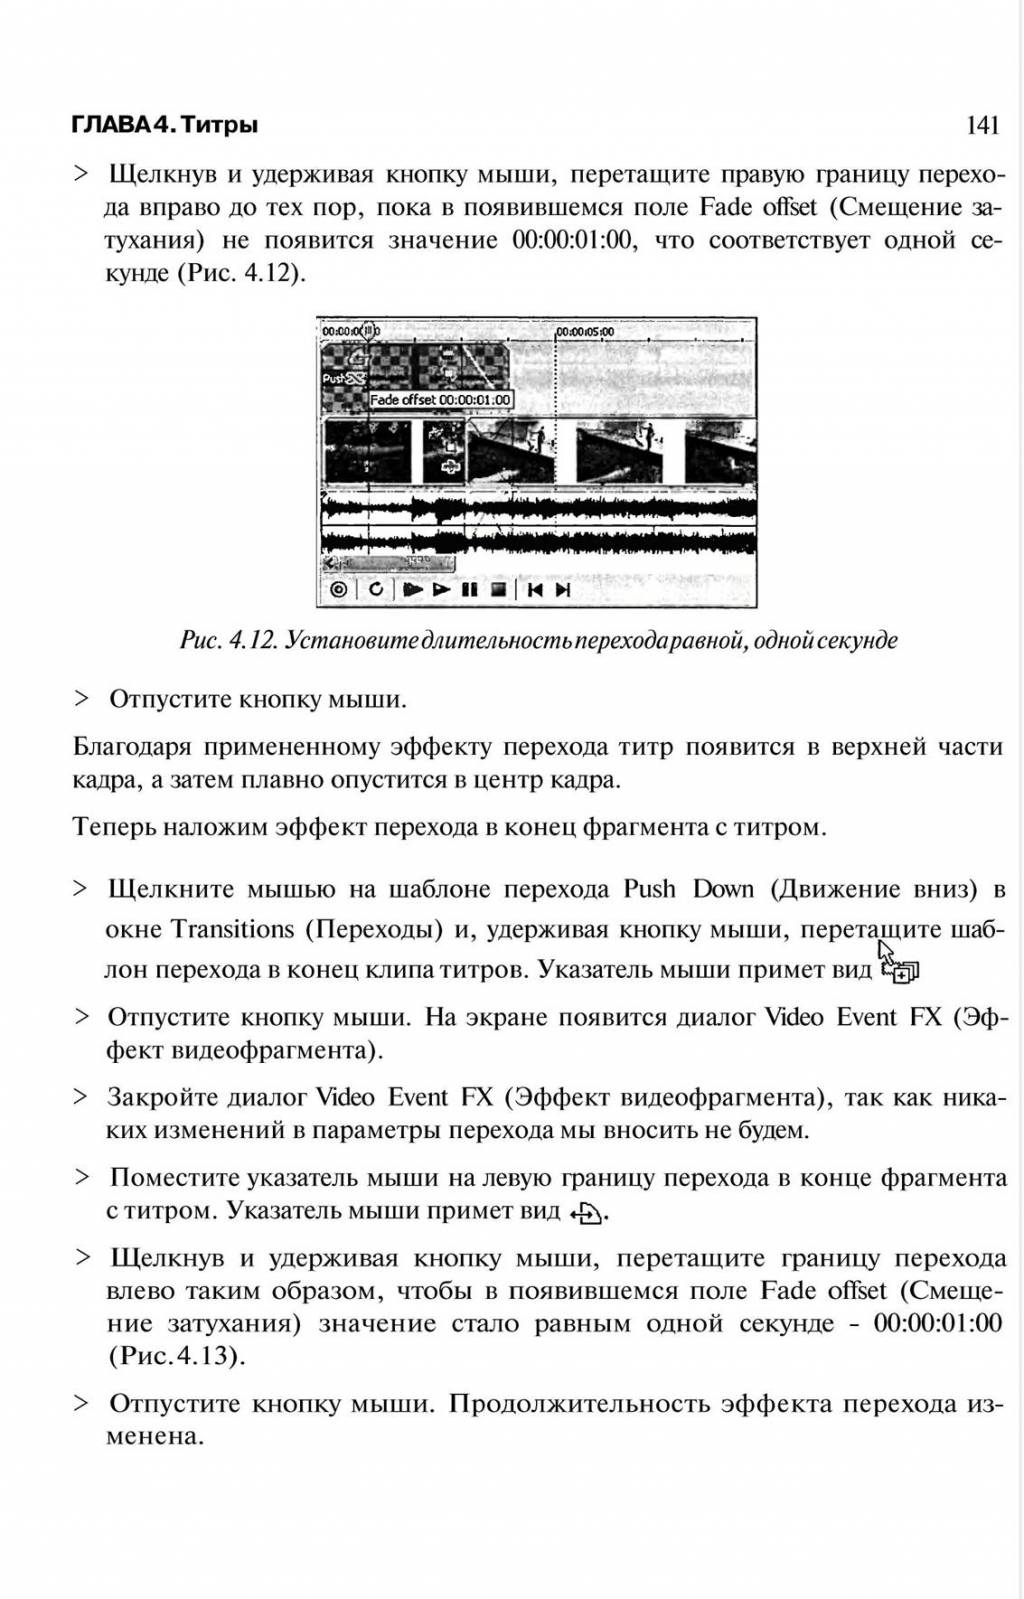 http://redaktori-uroki.3dn.ru/_ph/6/371112782.jpg